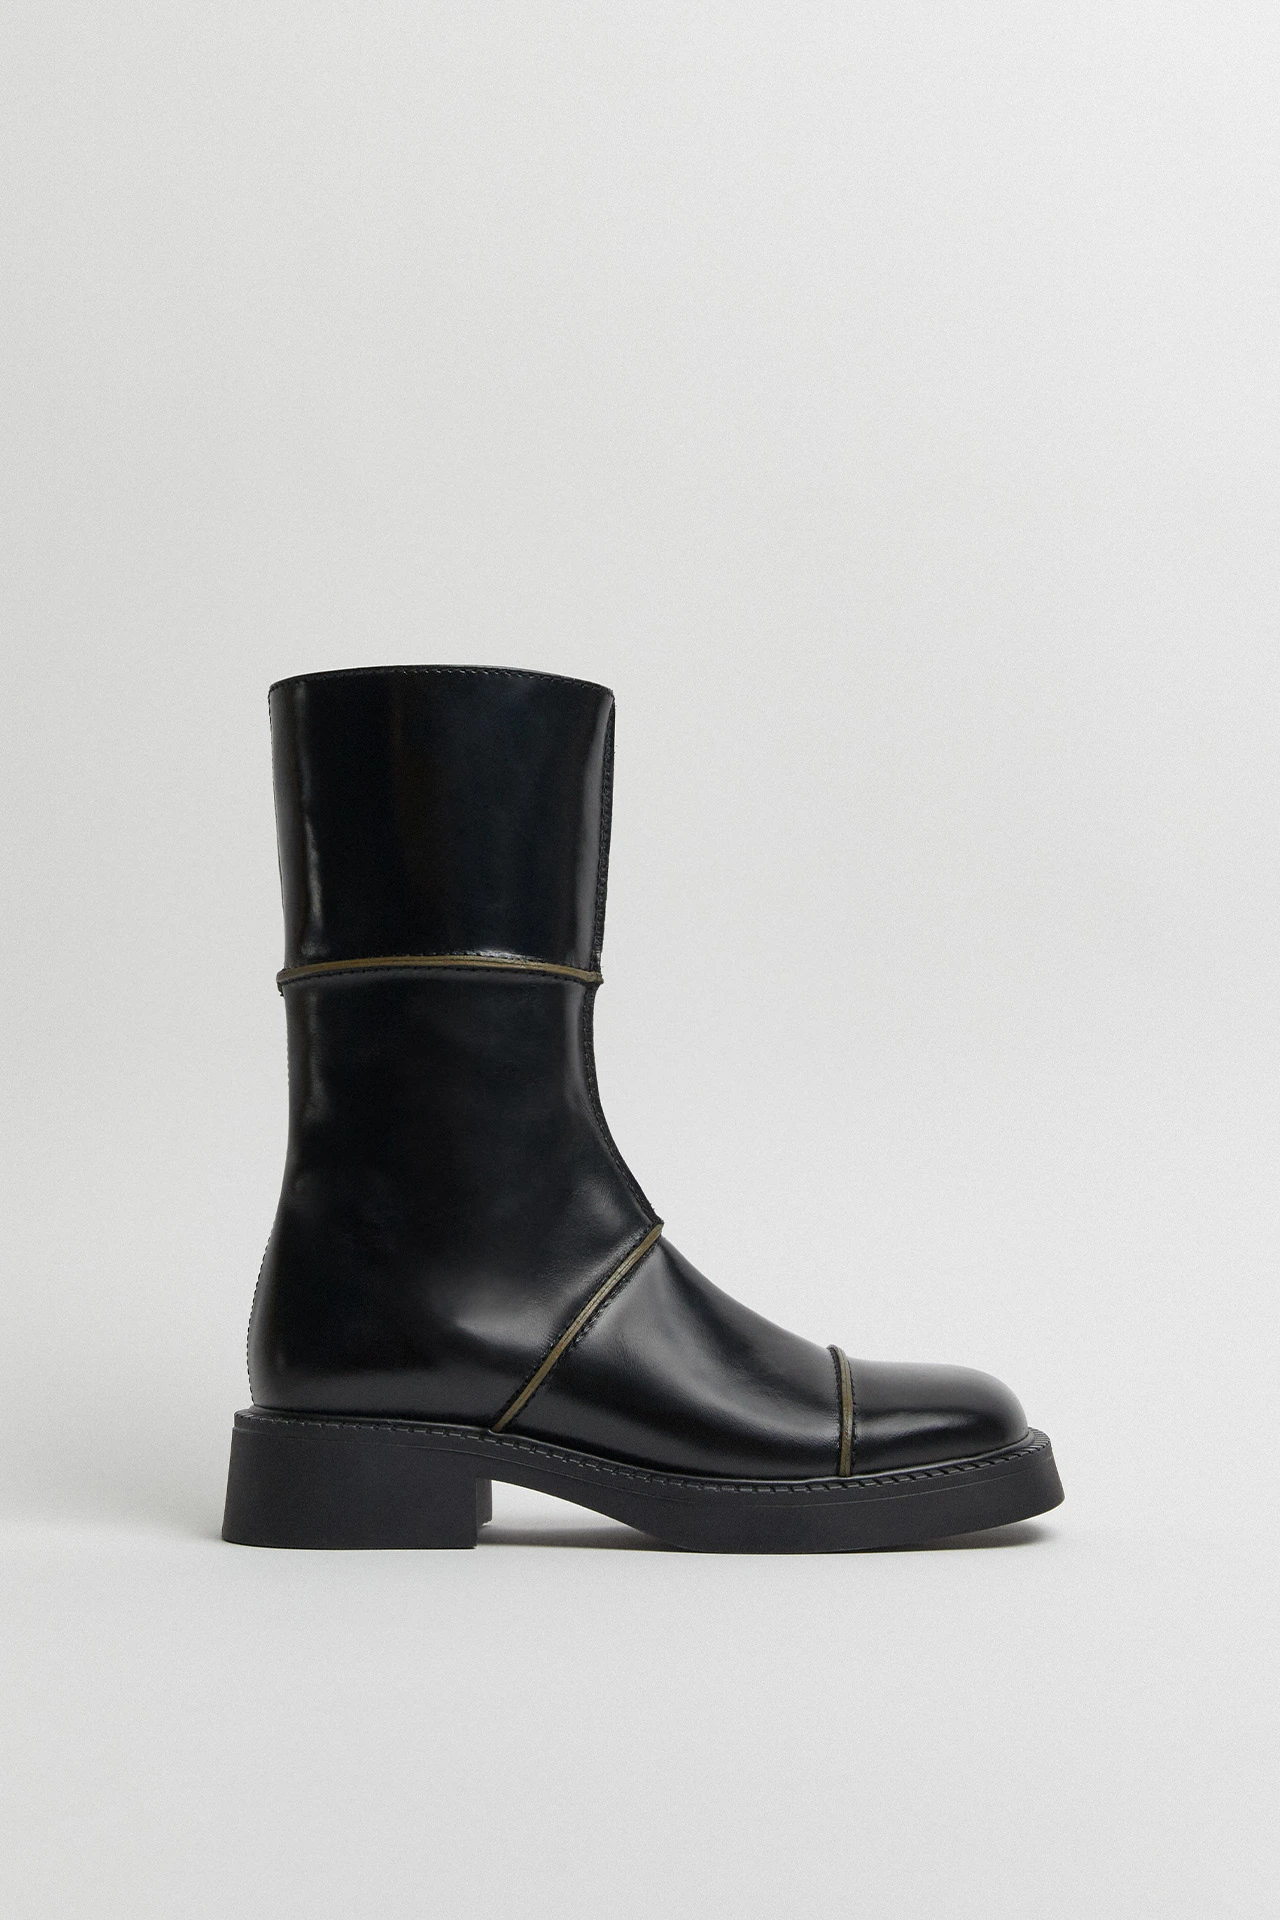 E8-dahlia-black-boots-01